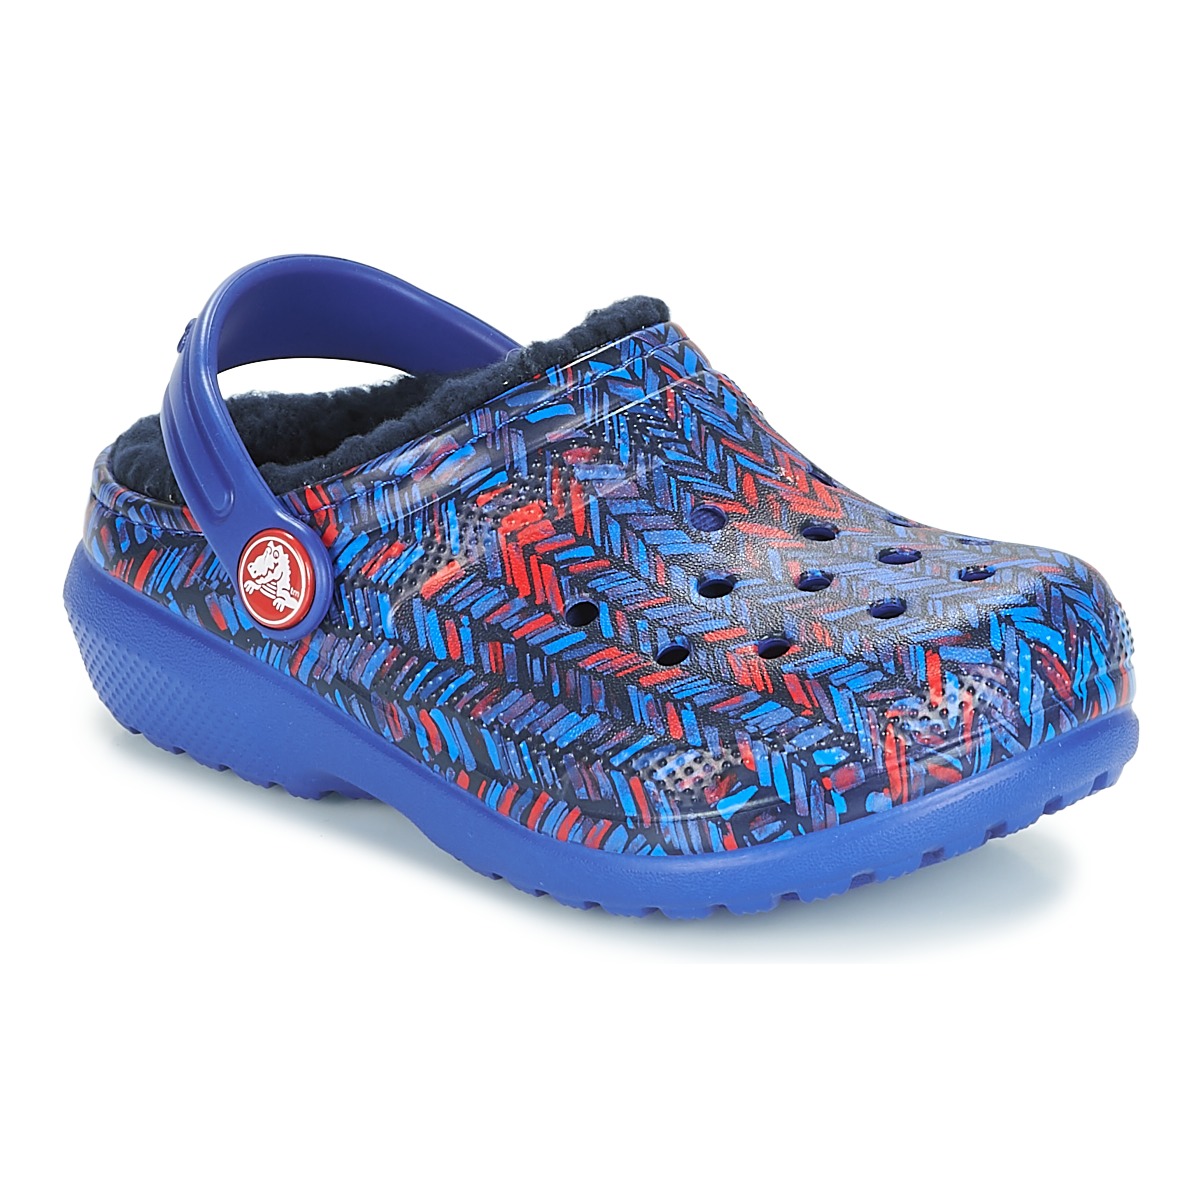 Schuhe Kinder Pantoletten / Clogs Crocs CLASSIC LINED GRAPHIC CLOG K Blau